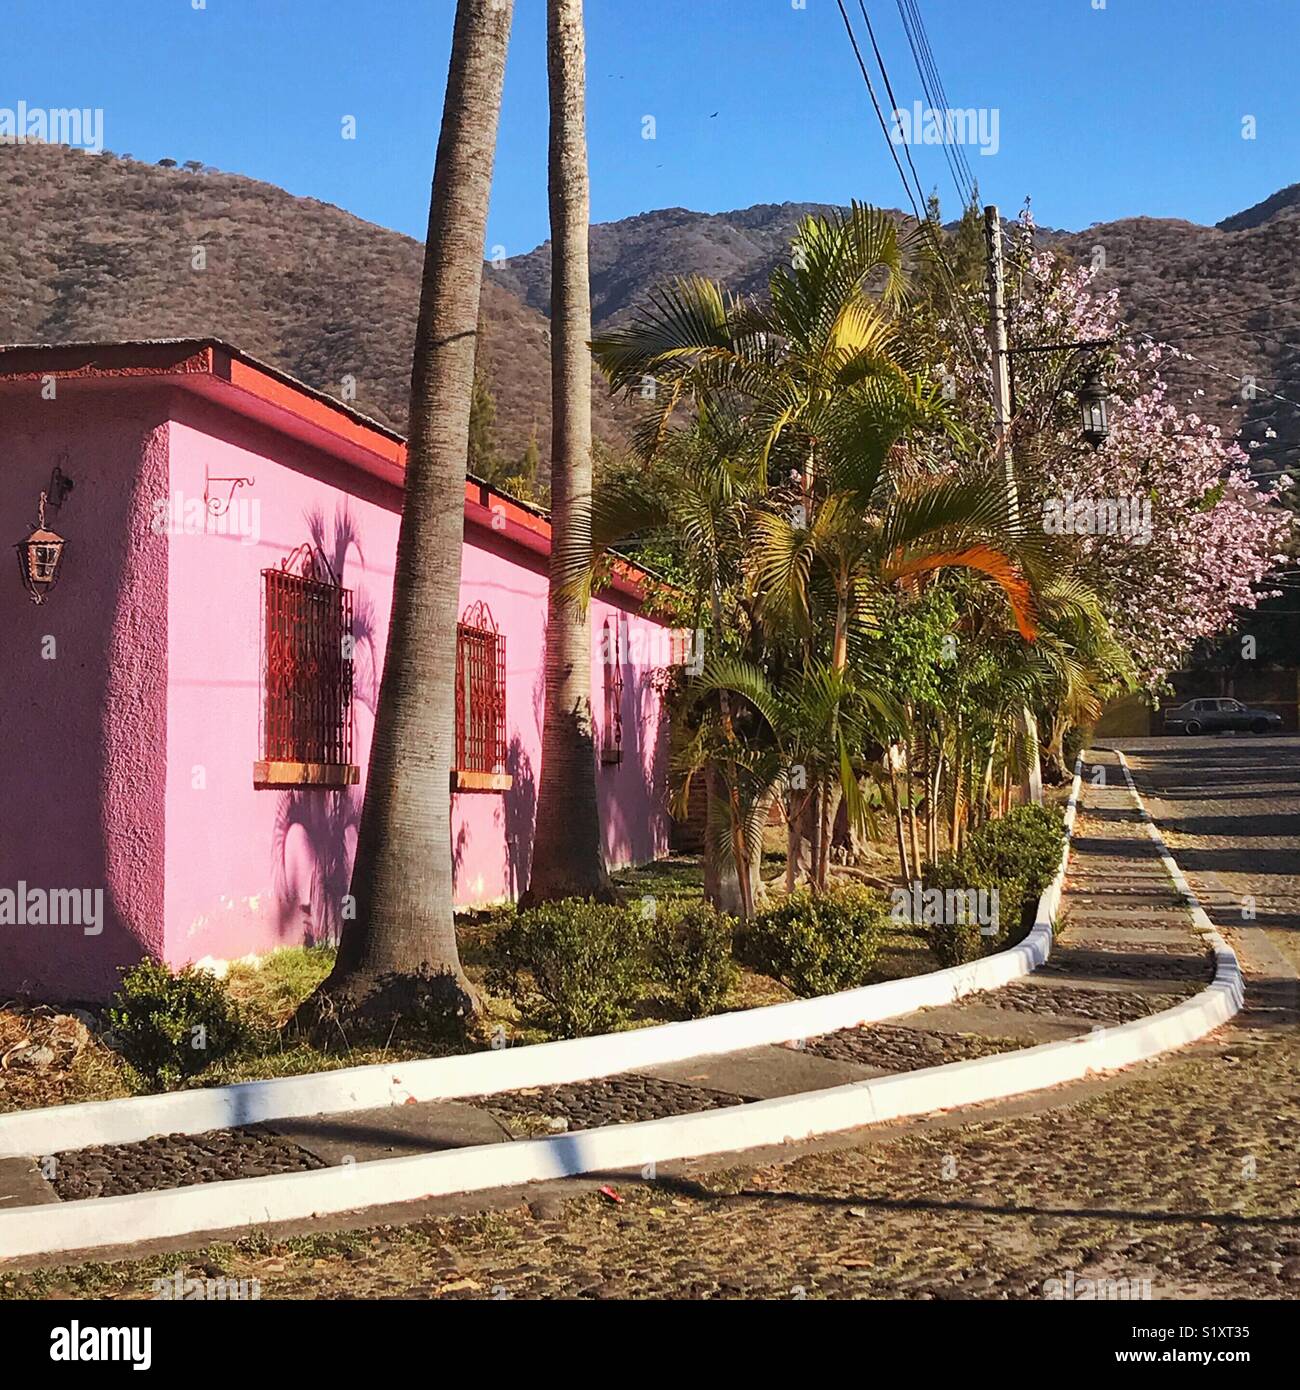 La mañana se llena de color rosa de la pintura del exterior de una casa en el árbol en flor en la calle en un barrio de Ajijic. Foto de stock